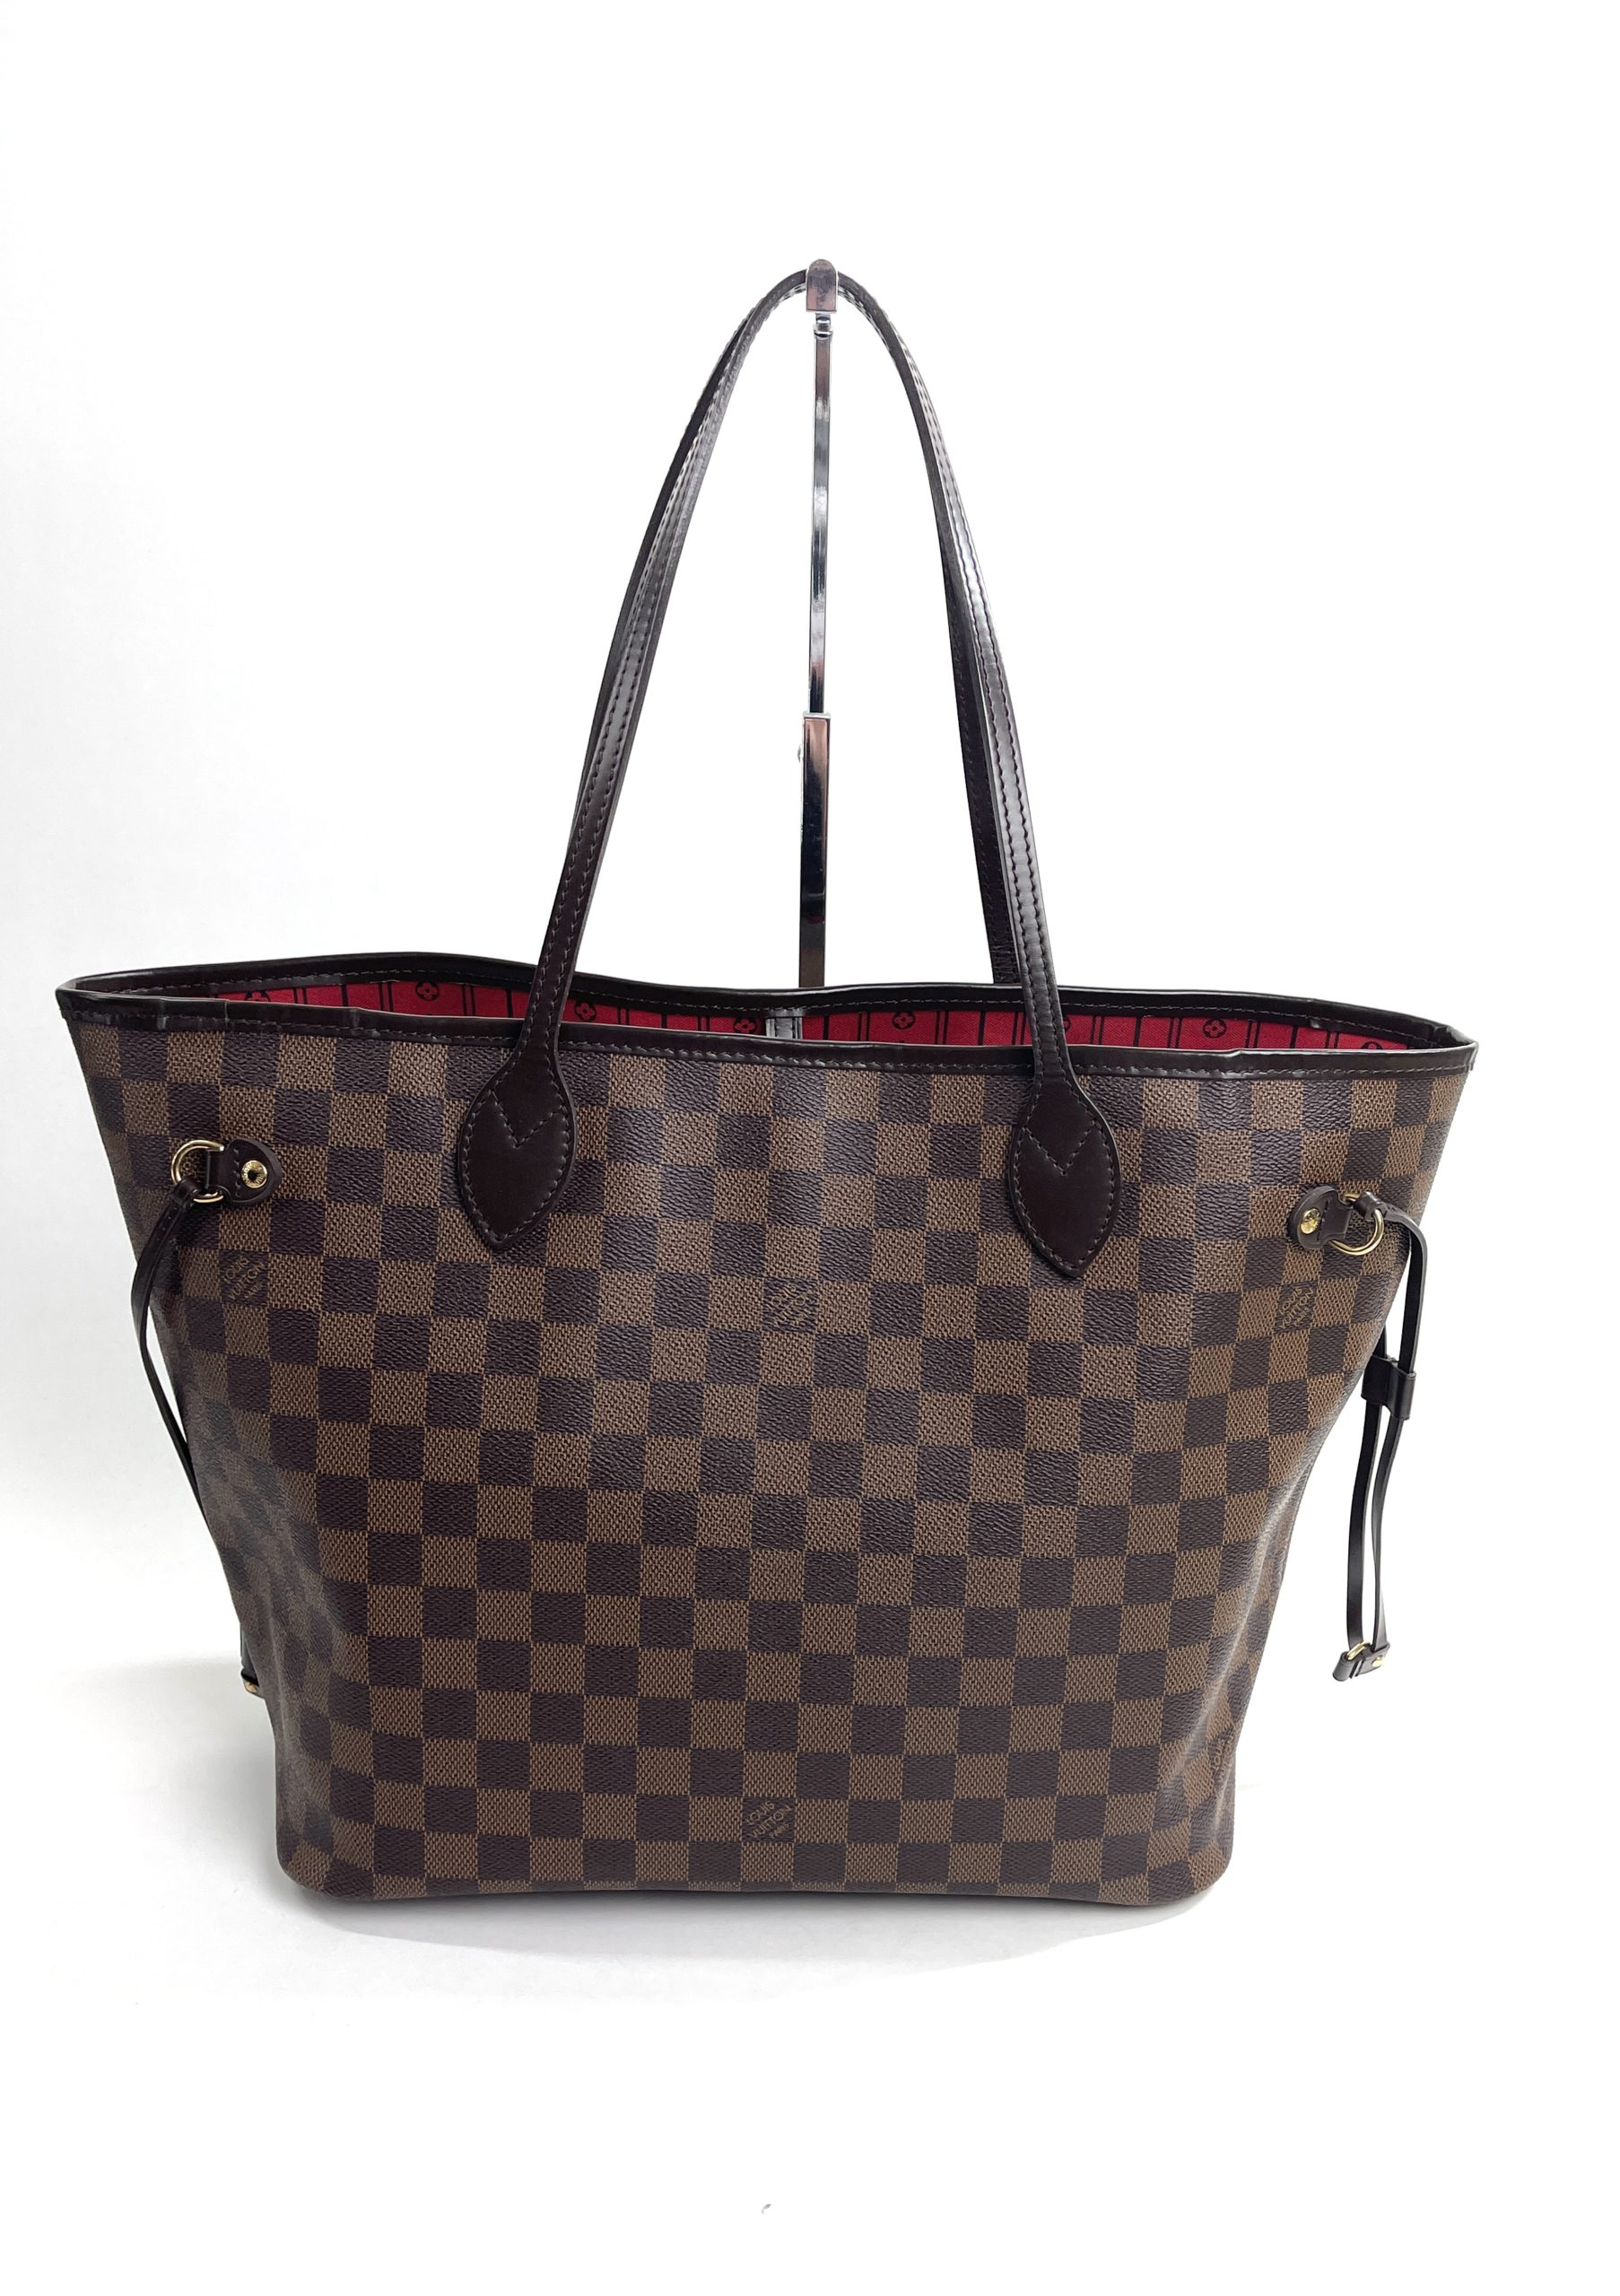 Louis Vuitton, Bags, Authentic Louis Vuitton Neverfull Mm Damier Ebene